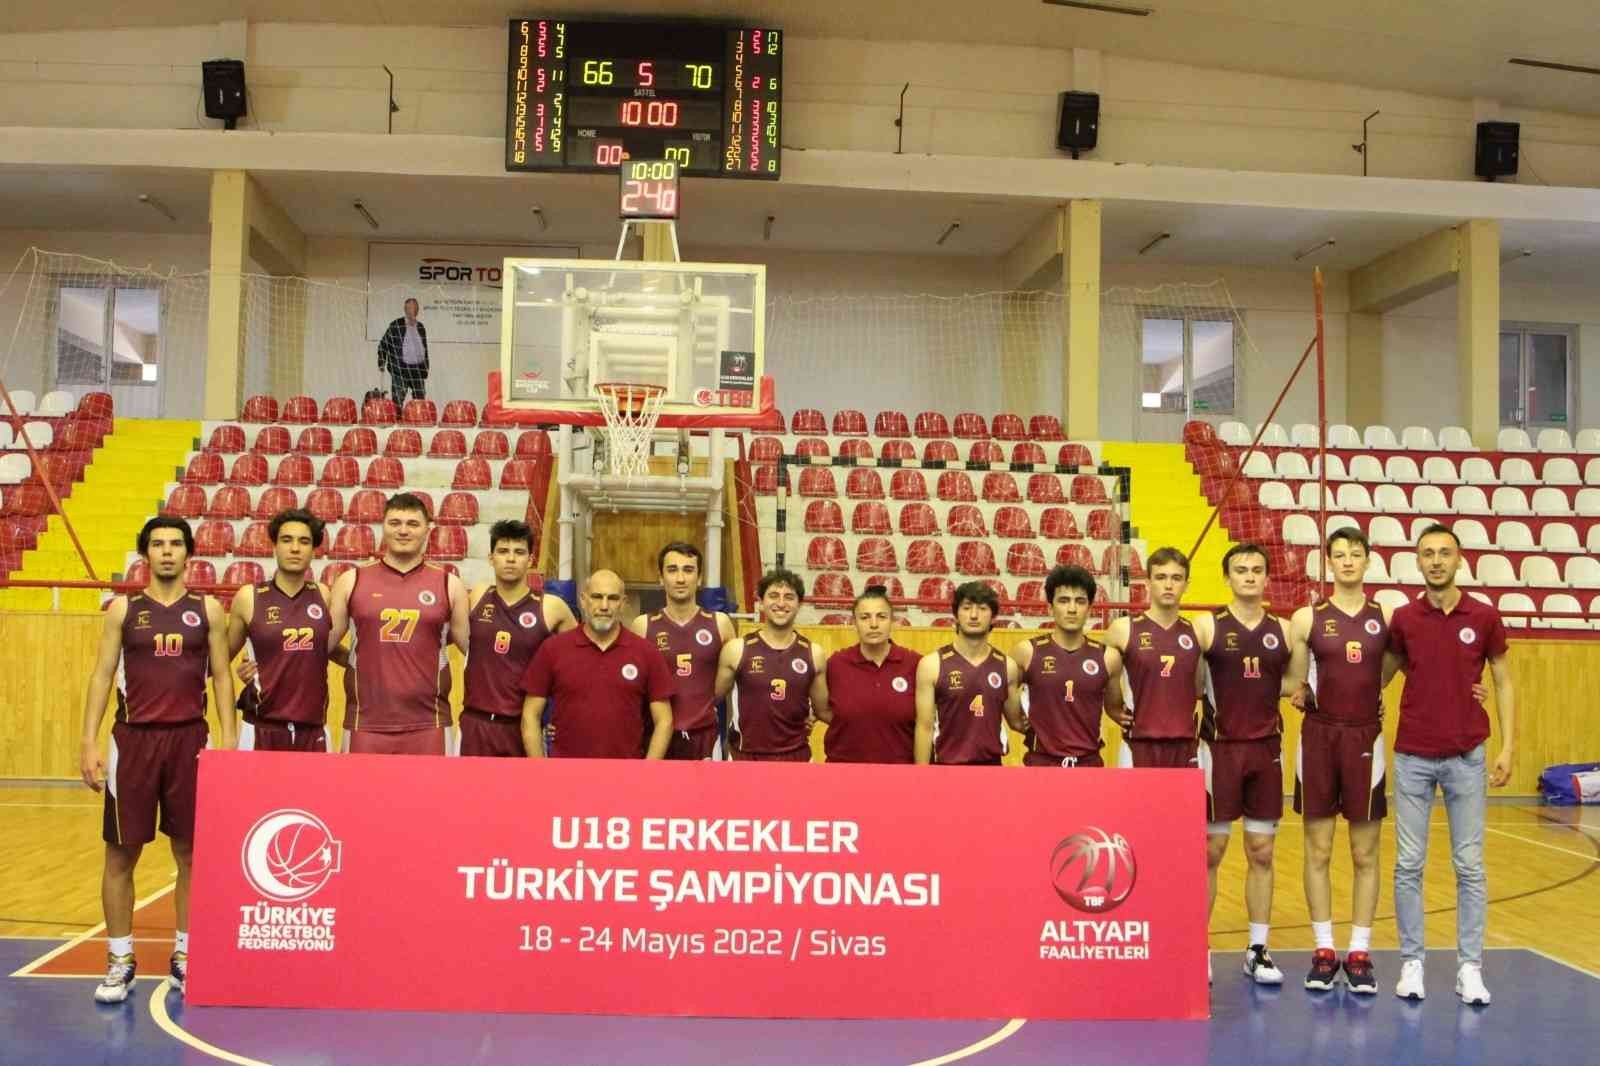 Tredaş Spor U18 Erkek Basketbol Takımı, Türkiye Şampiyonasında İz Bıraktı